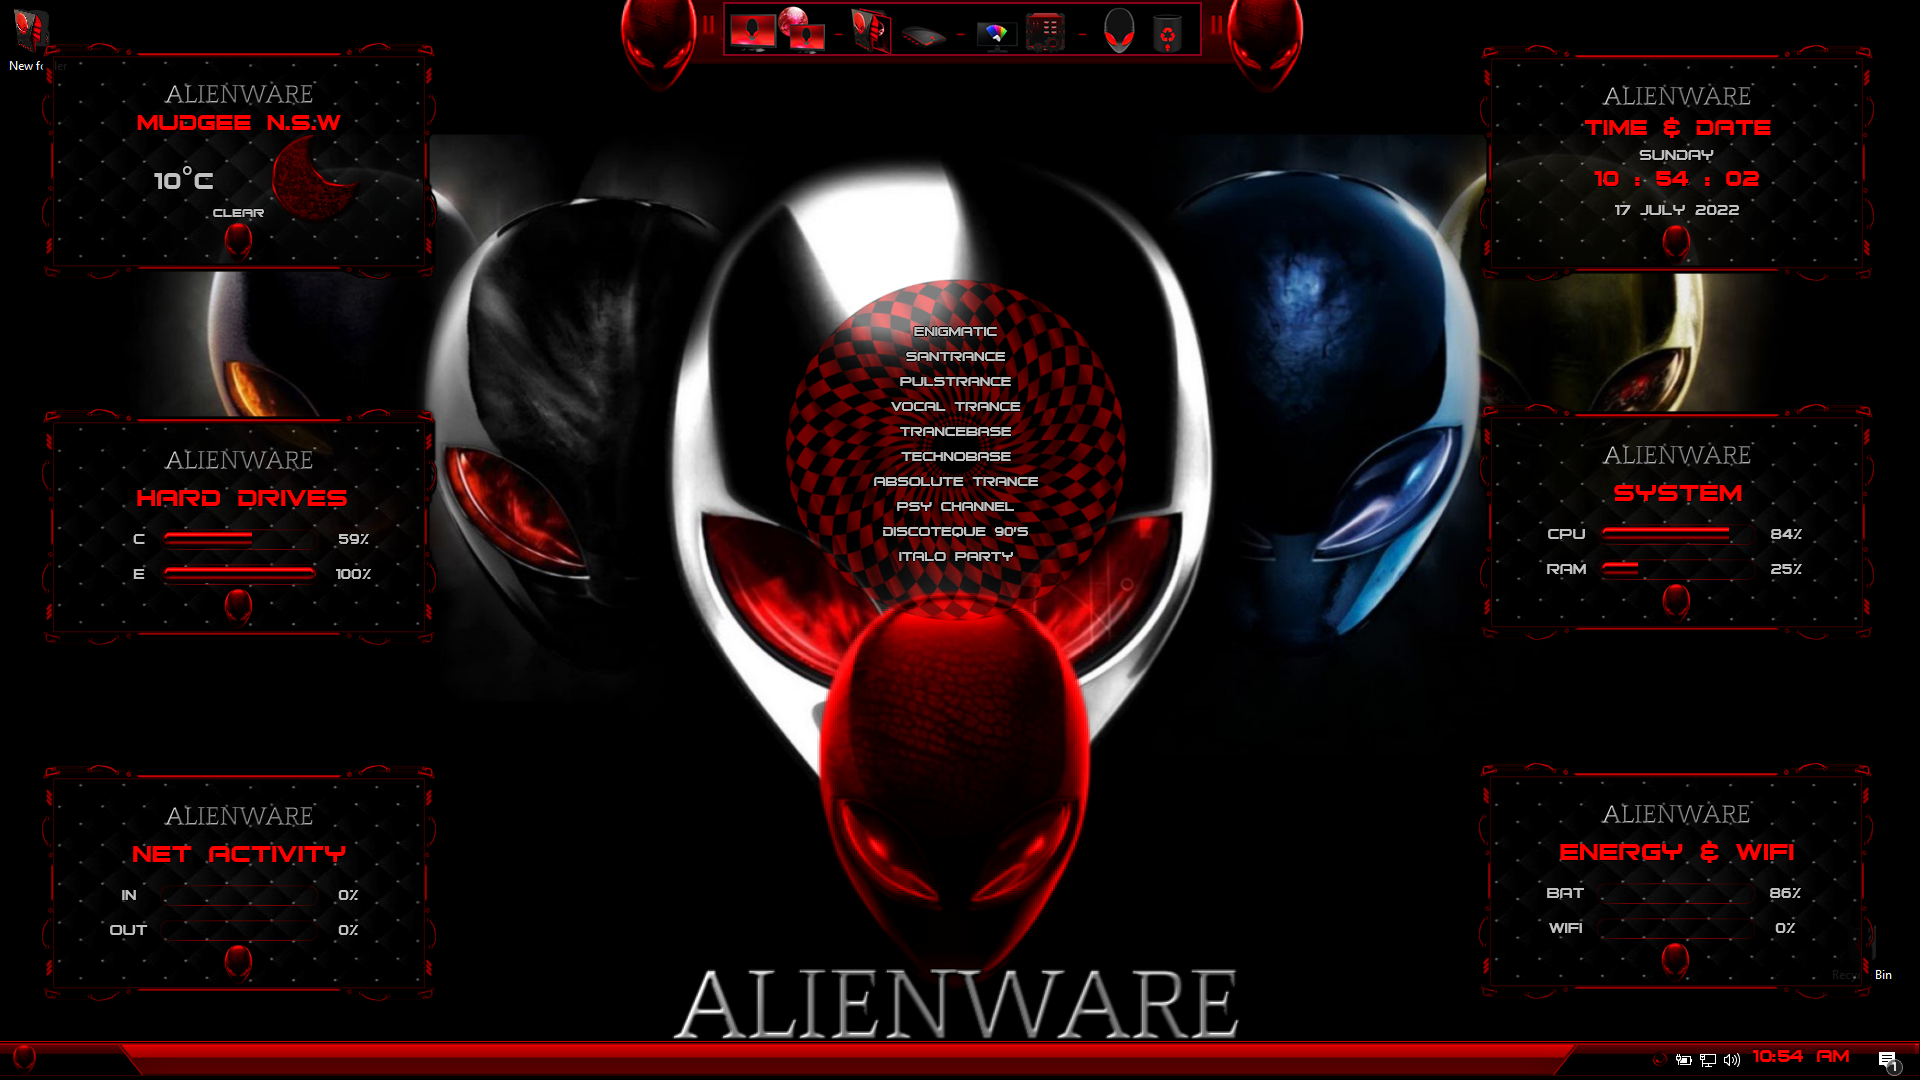 Download Alienware Skin Pack Premium Full Version